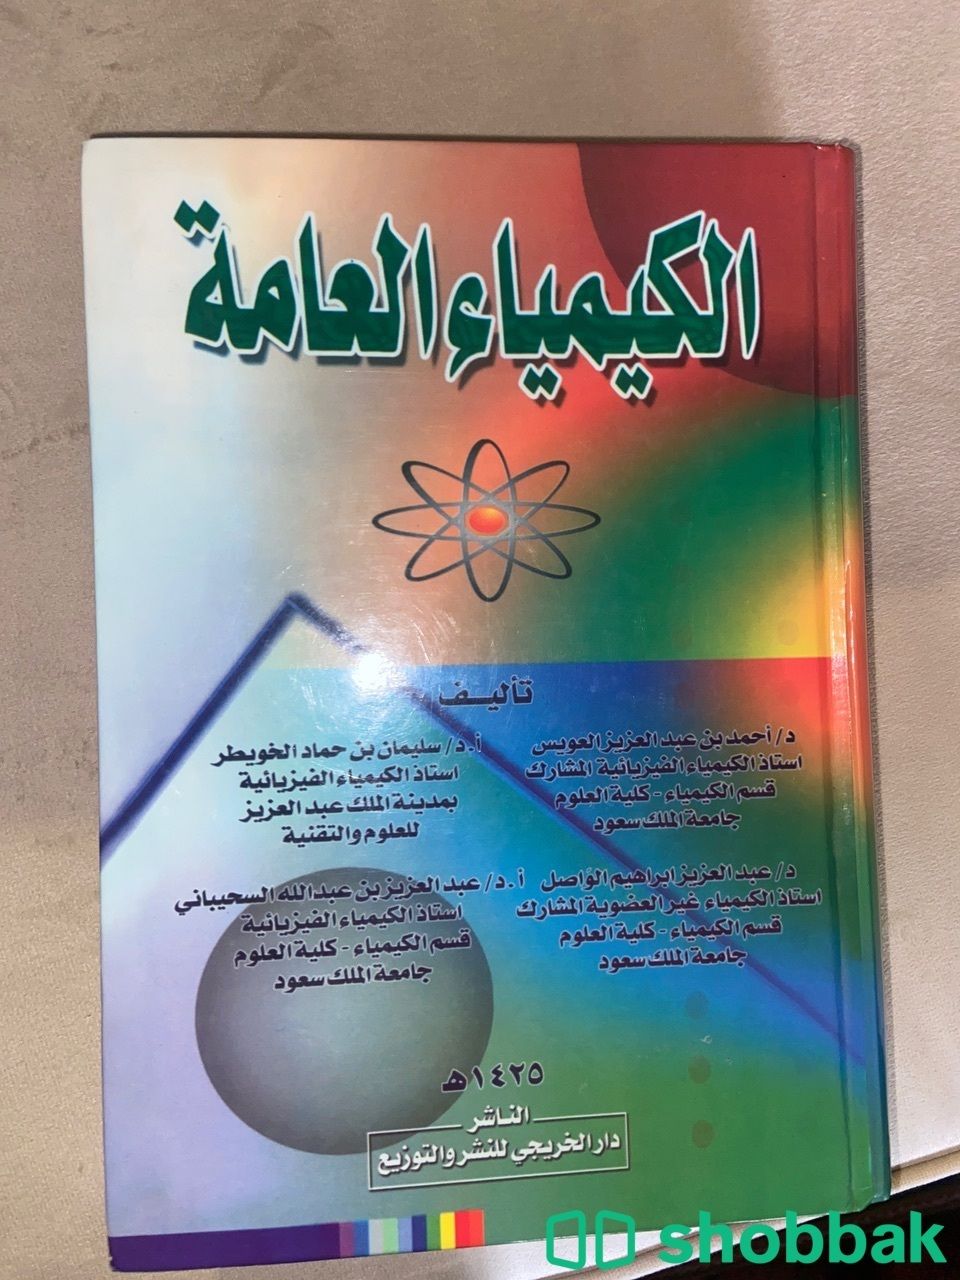 كتاب الكيمياء العامه  Shobbak Saudi Arabia